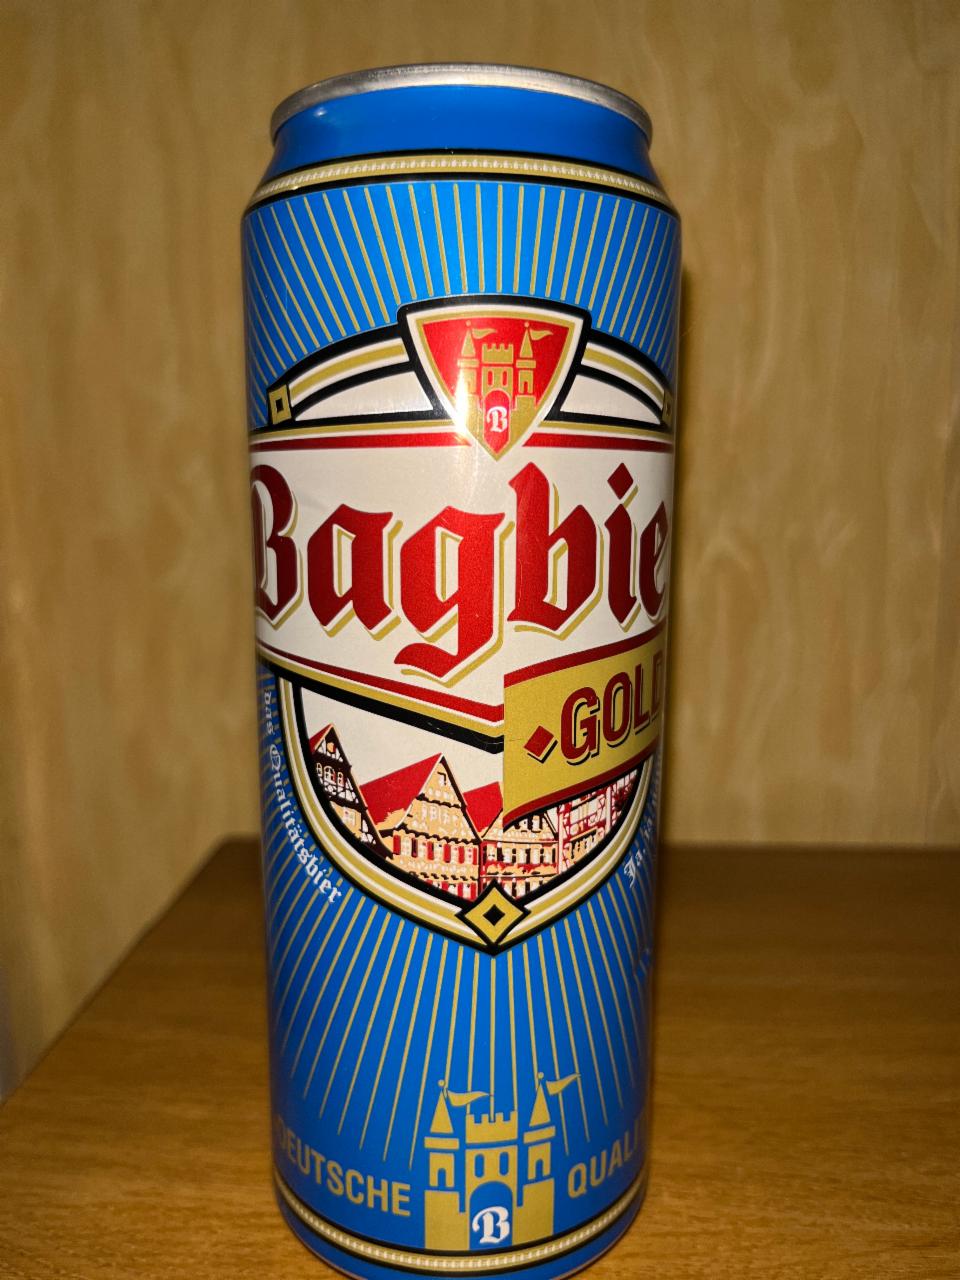 Фото - Пиво Багир Голден светлое пастеризованное Bagbier Golden